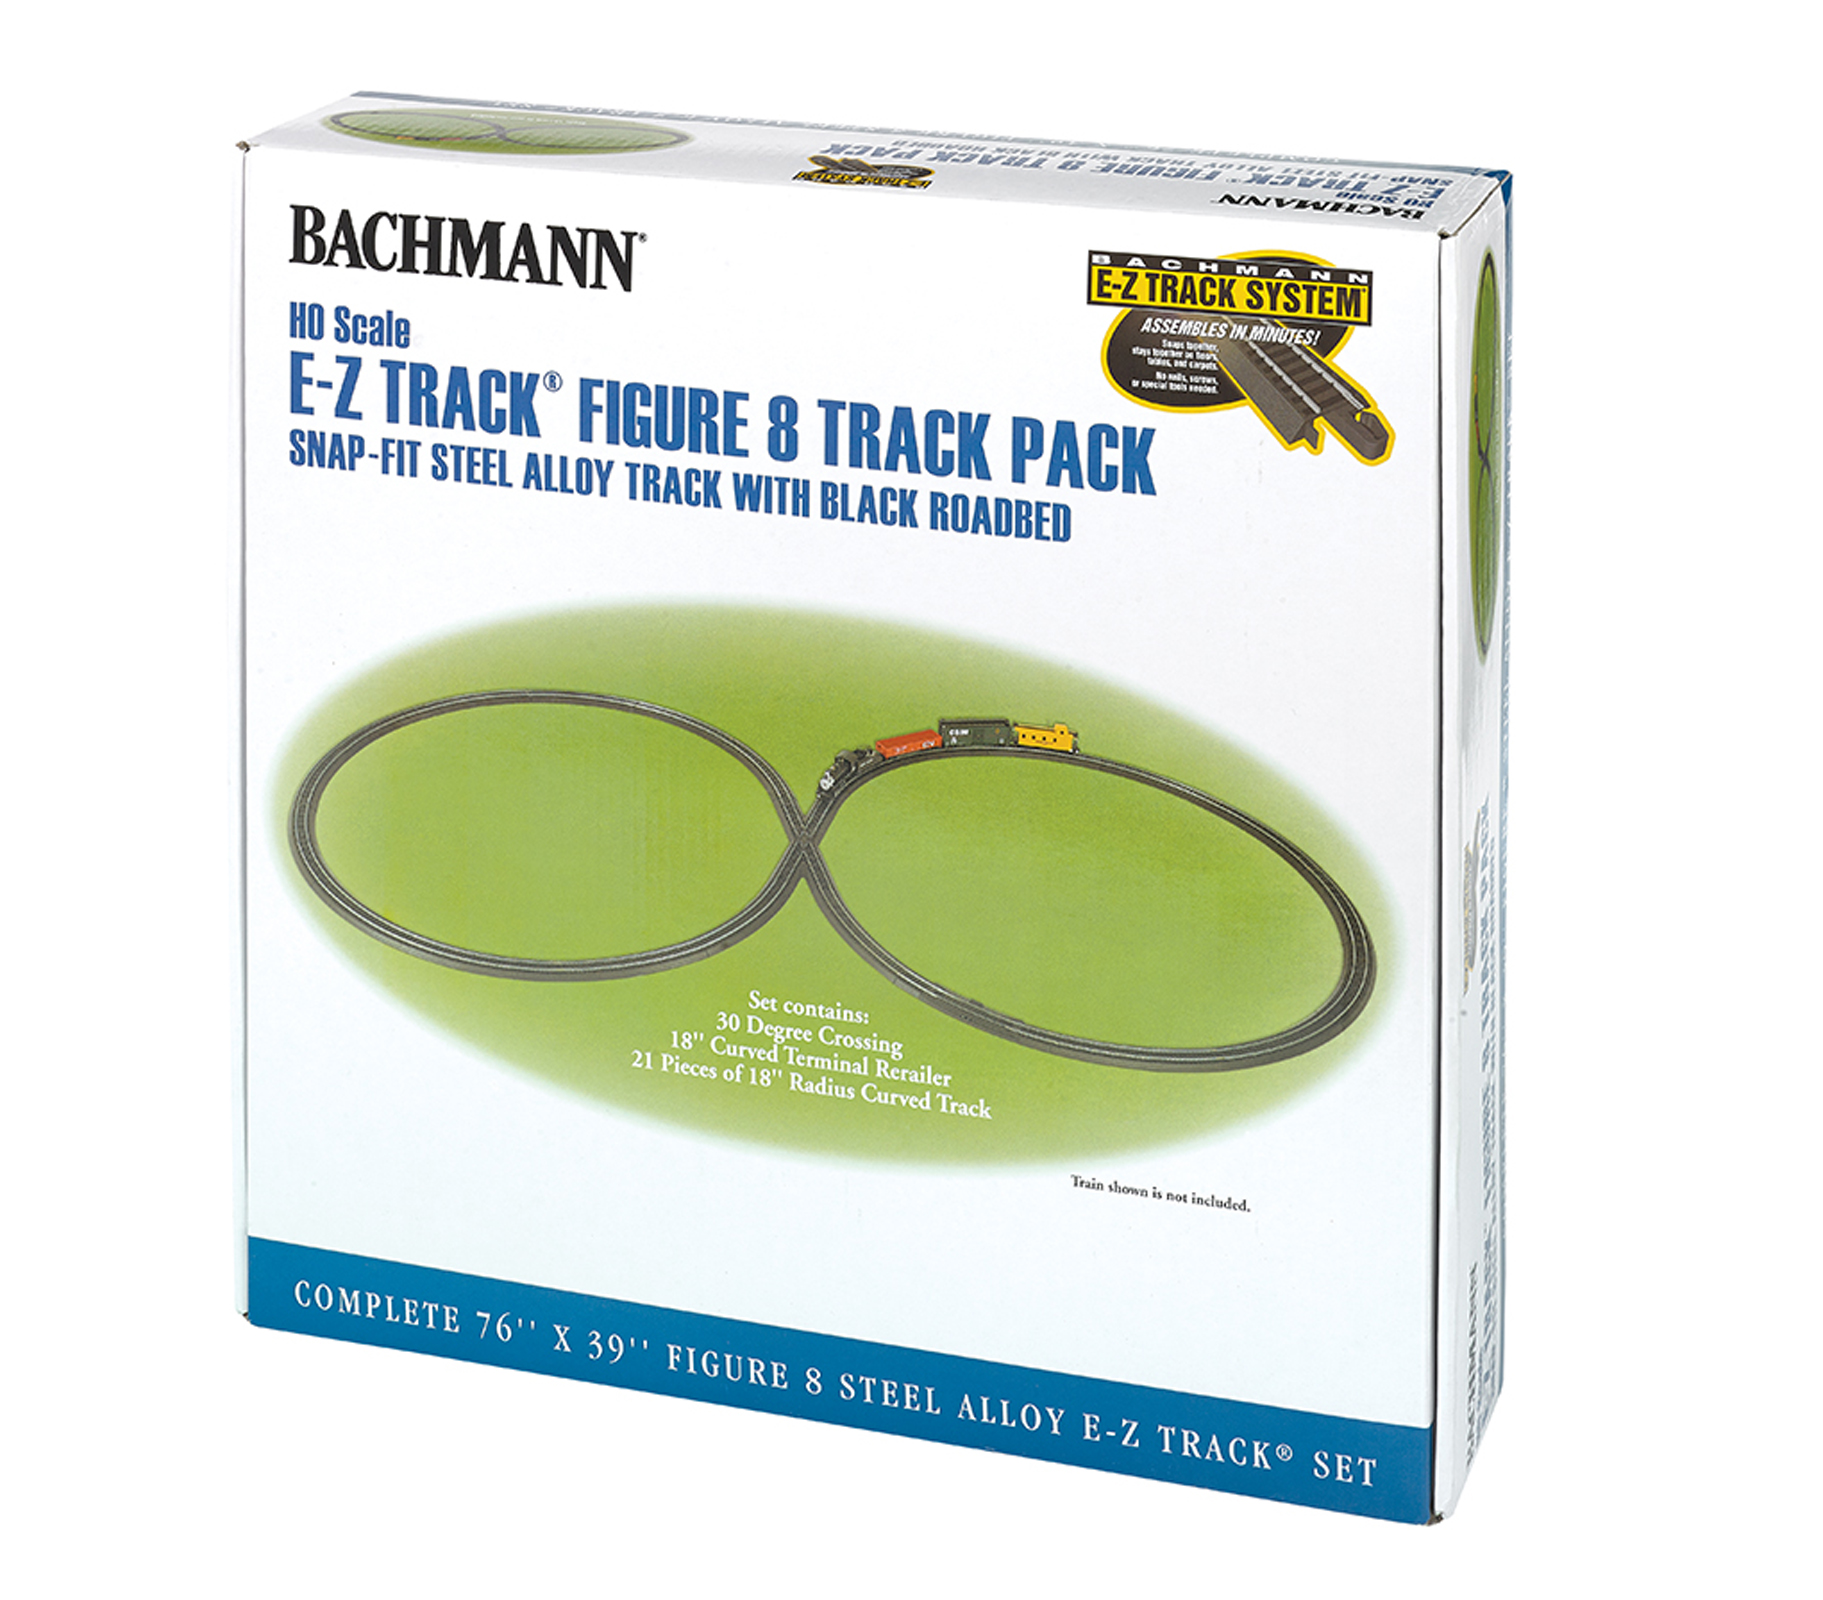 Bachmann Trains E-Z Track Figure 8 Track Pack  HO Scale